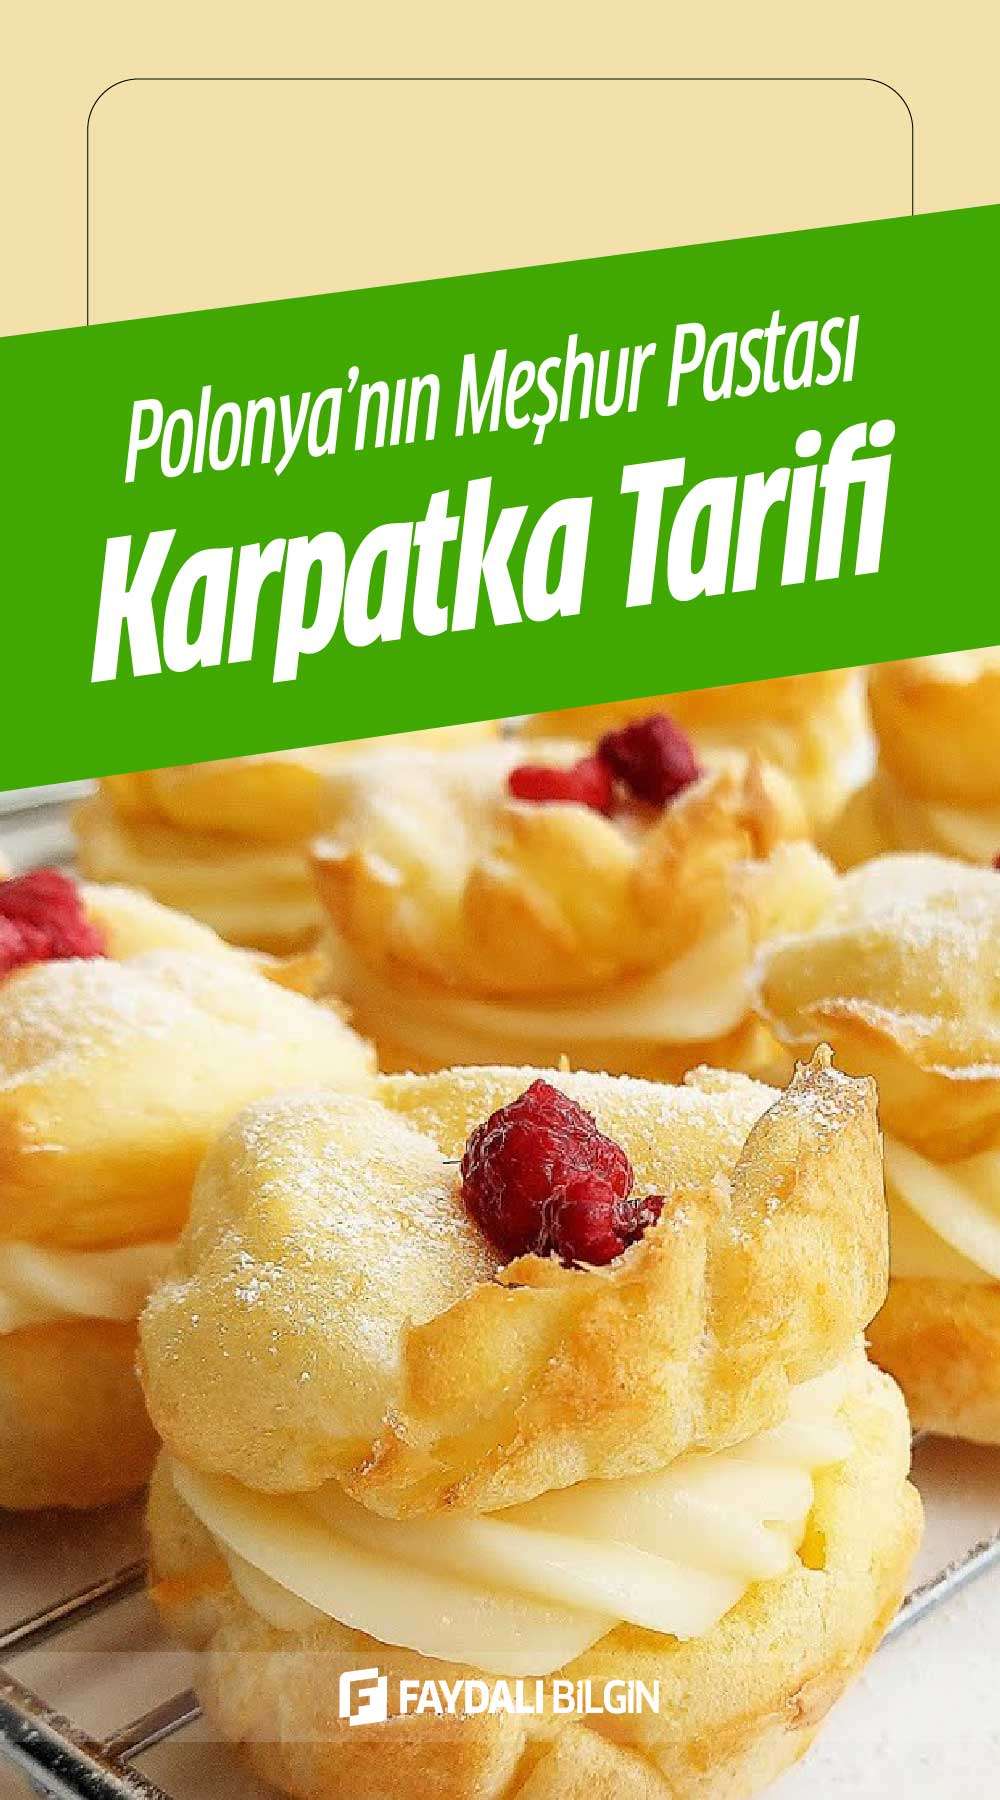 polonya’nın meşhur pastası karpatka tarifi